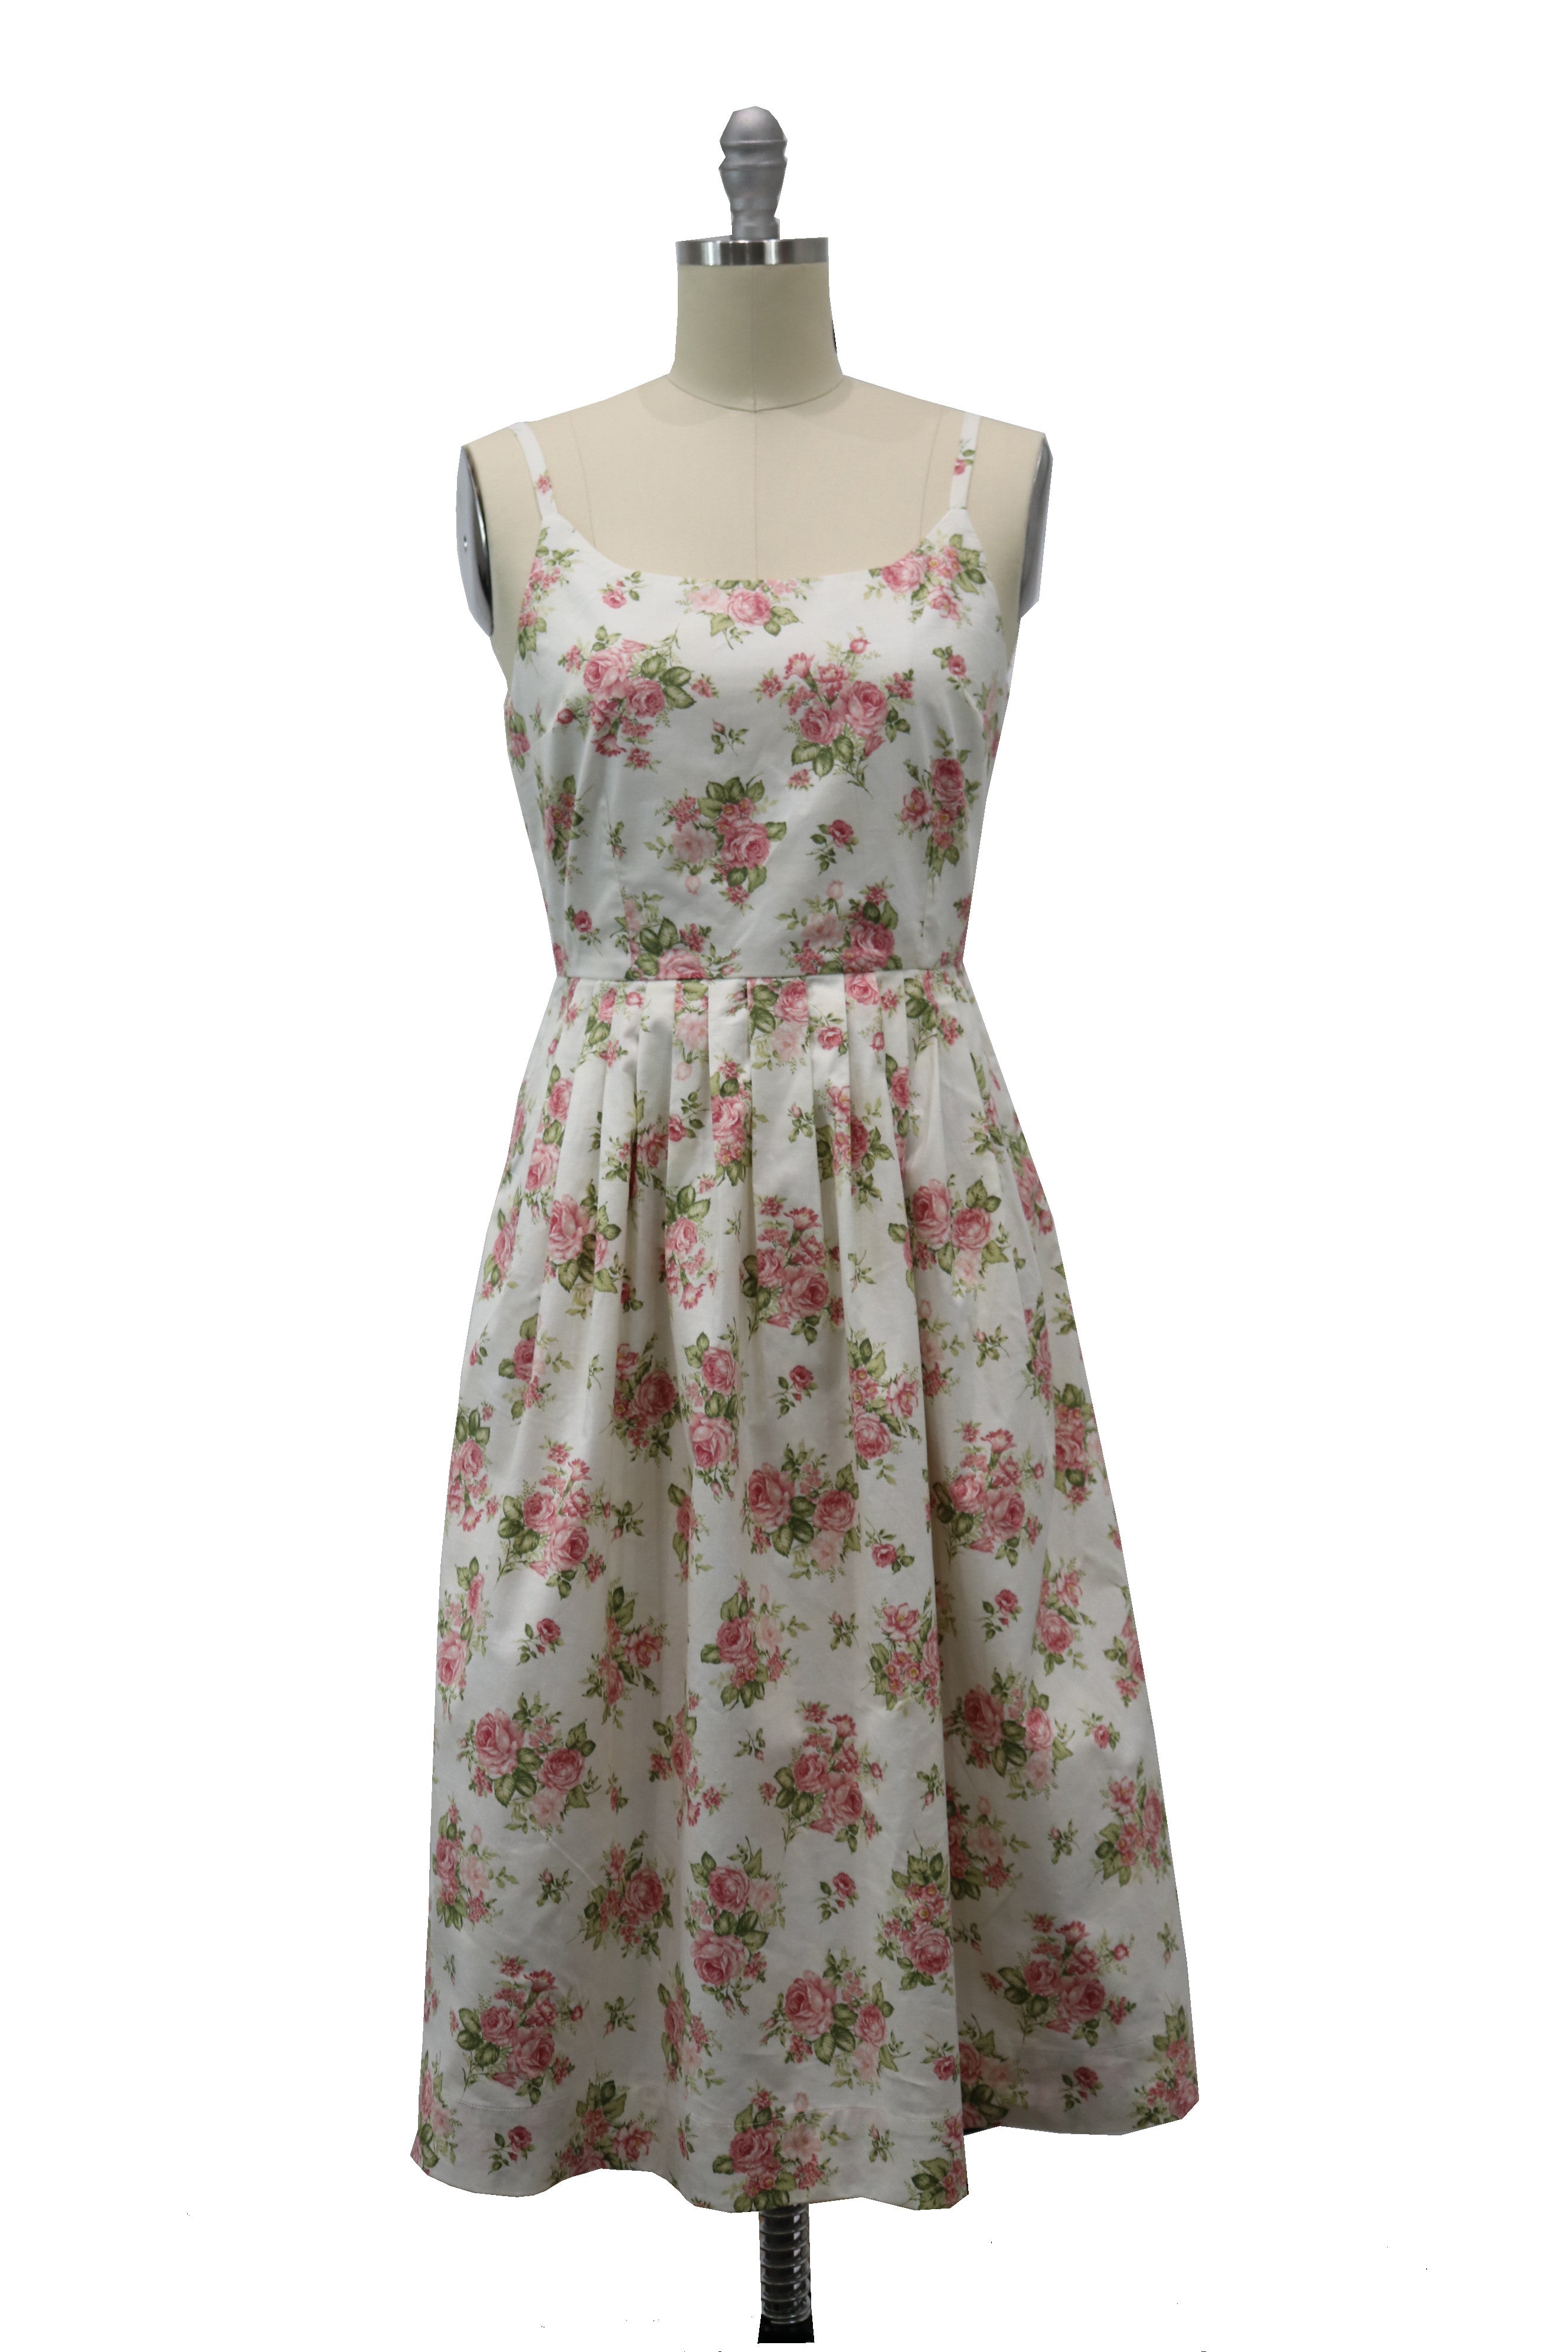 1950s Swing Dresses | 50s Swing Dress